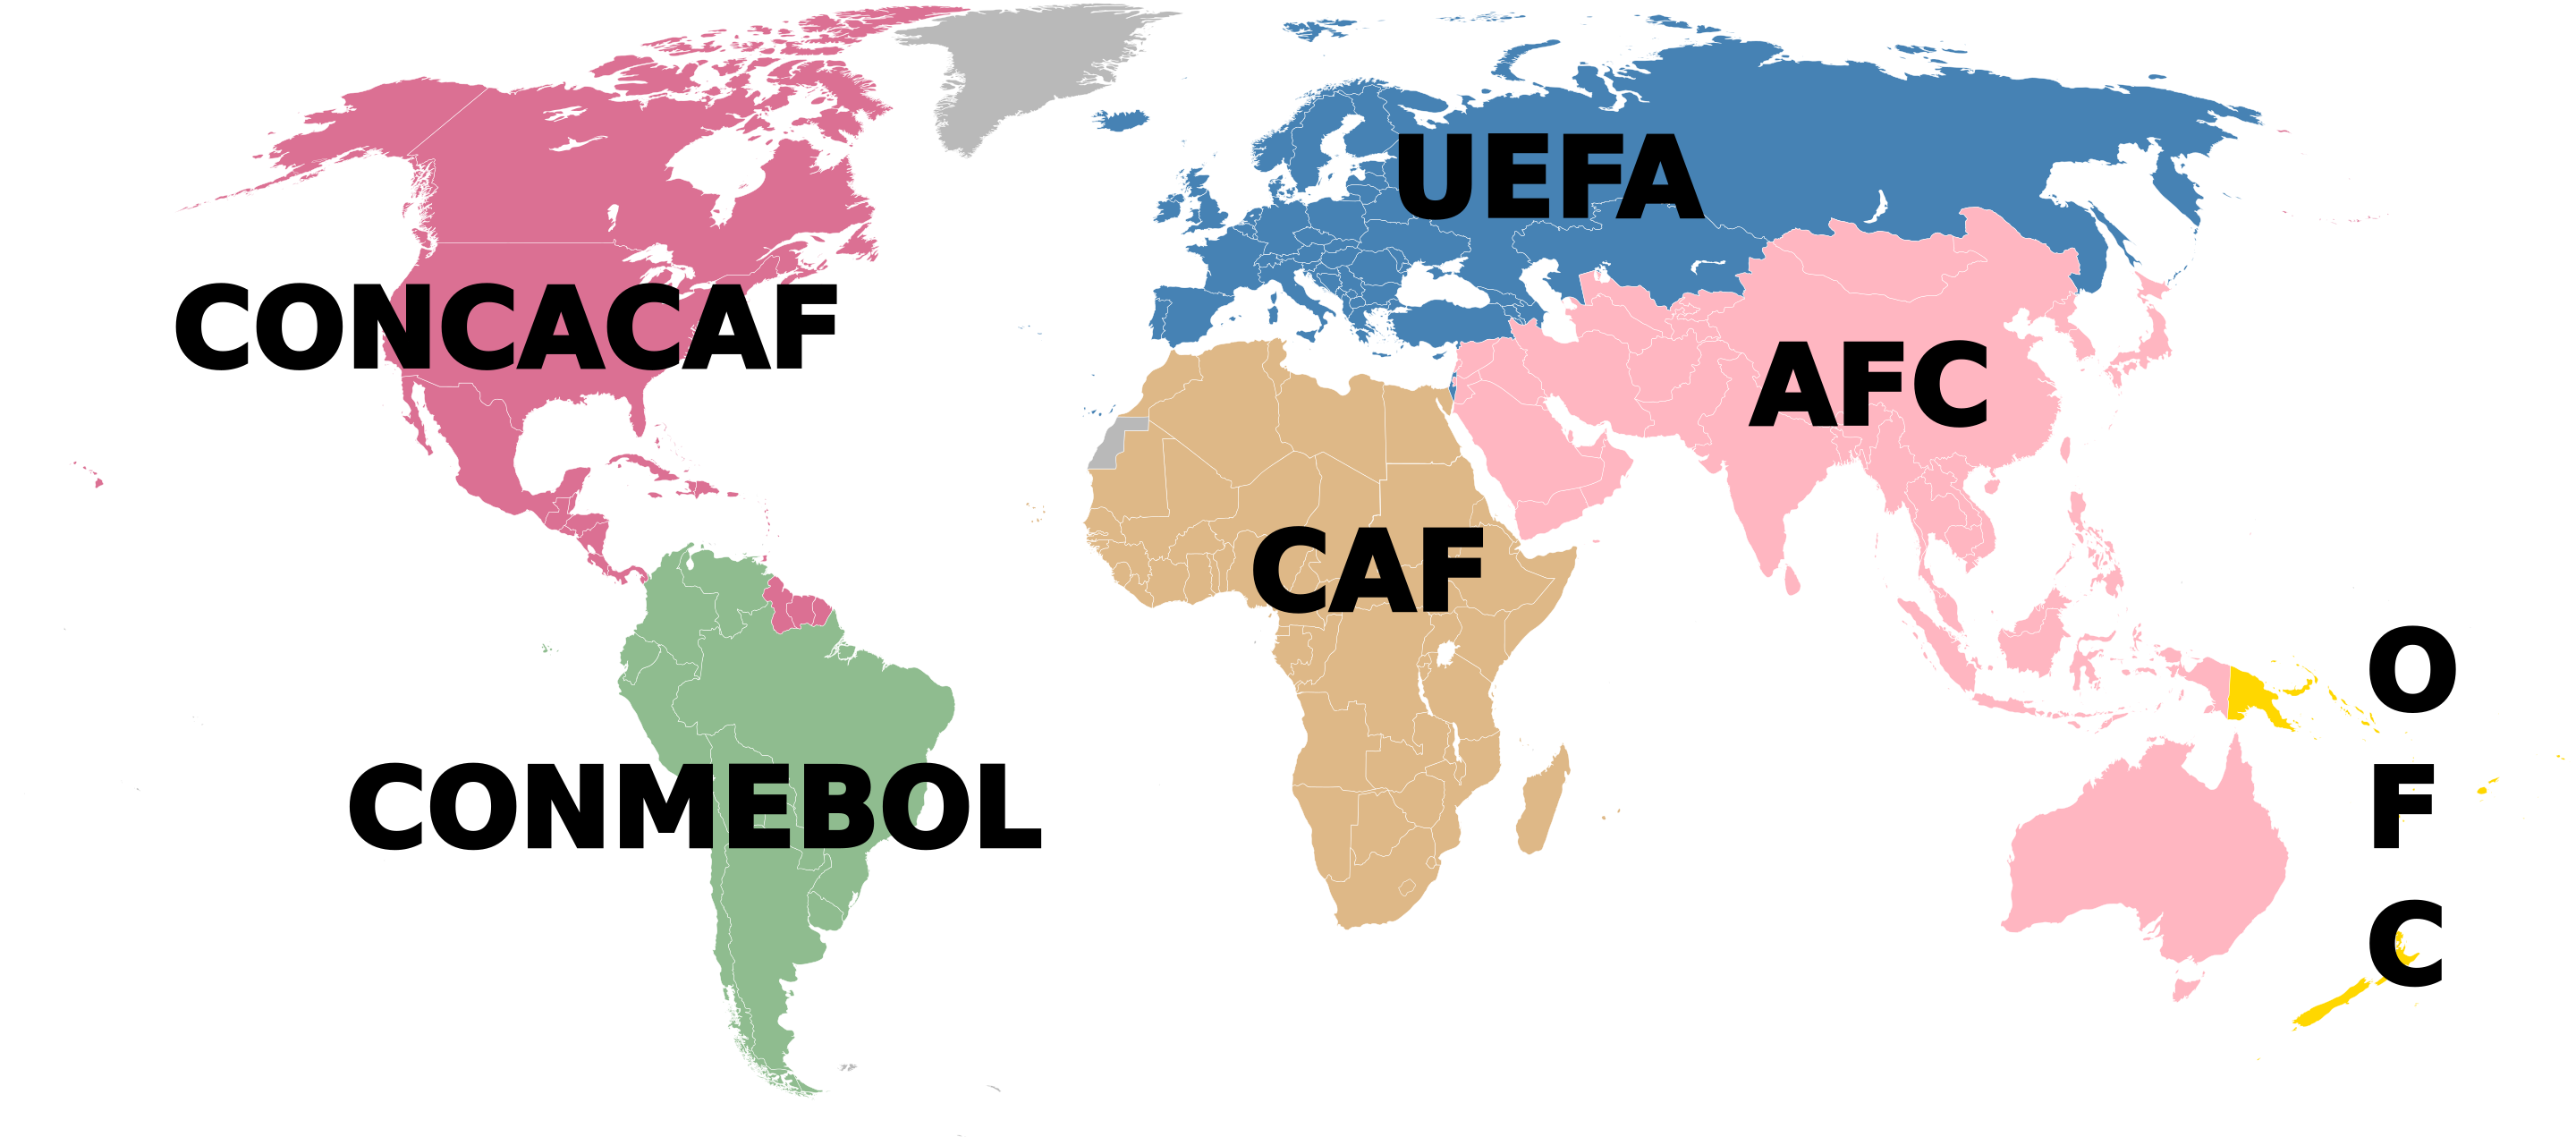 FIFA confederations